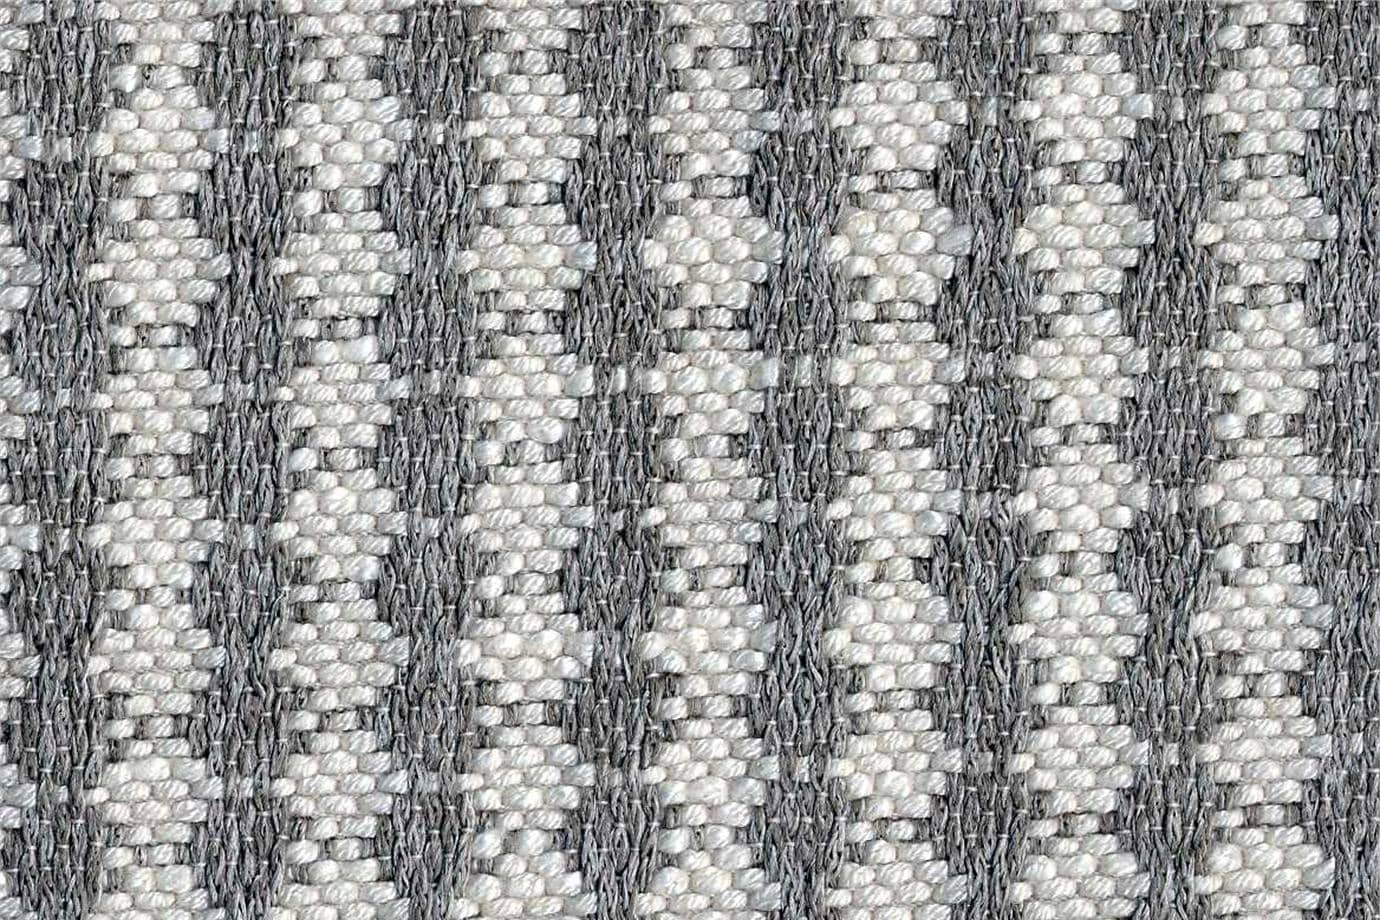 J1951 SECONDIGLIANO 004 Argento-ferro home decoration fabric